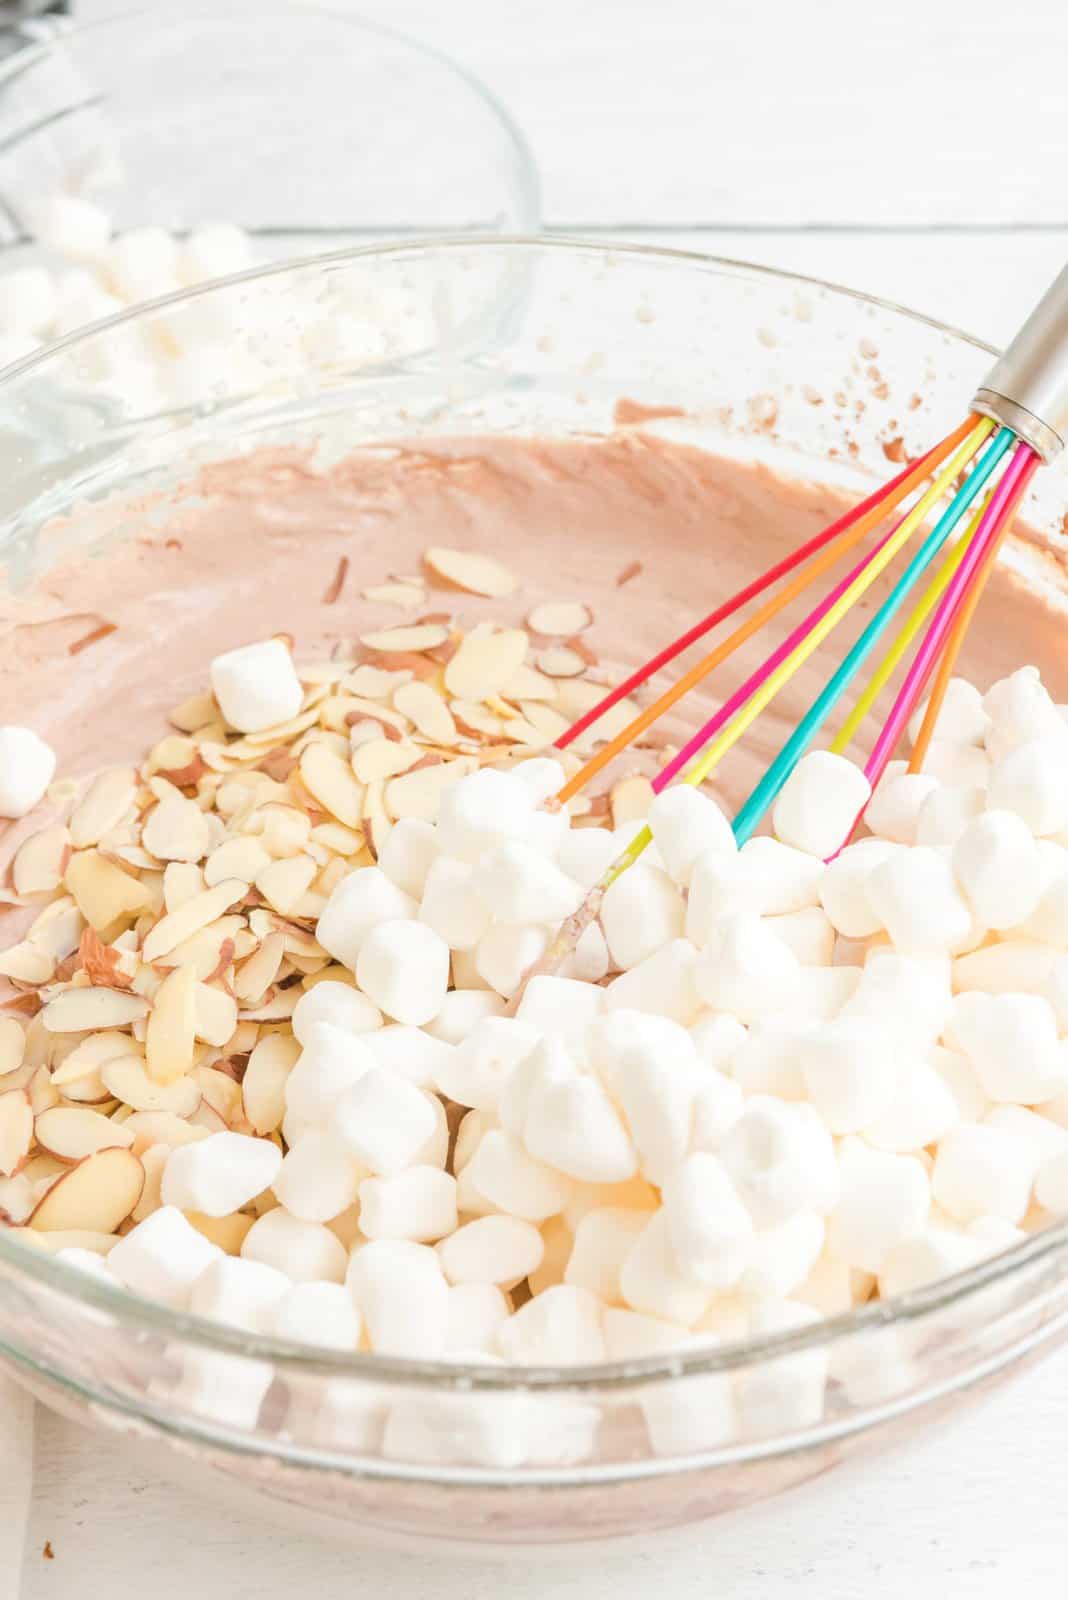 Mini marshmallow e mandorle aggiunti alla miscela di gelato in una ciotola.